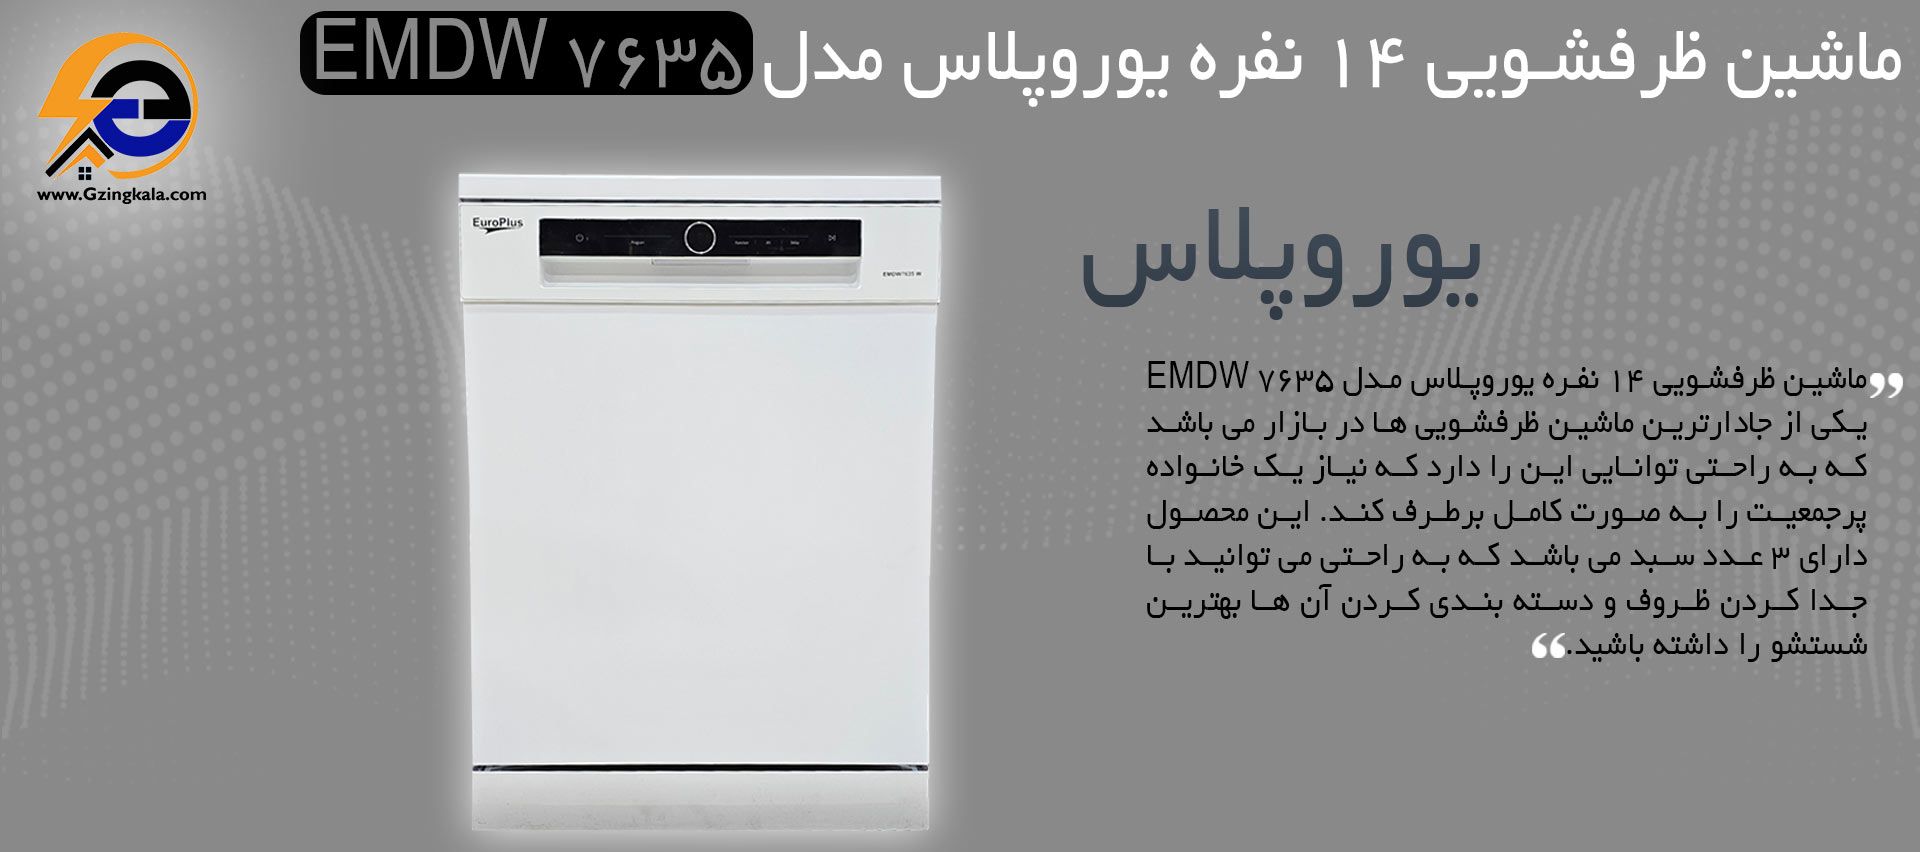 ماشین ظرفشویی 14 نفره یوروپلاس مدل EMDW 7635